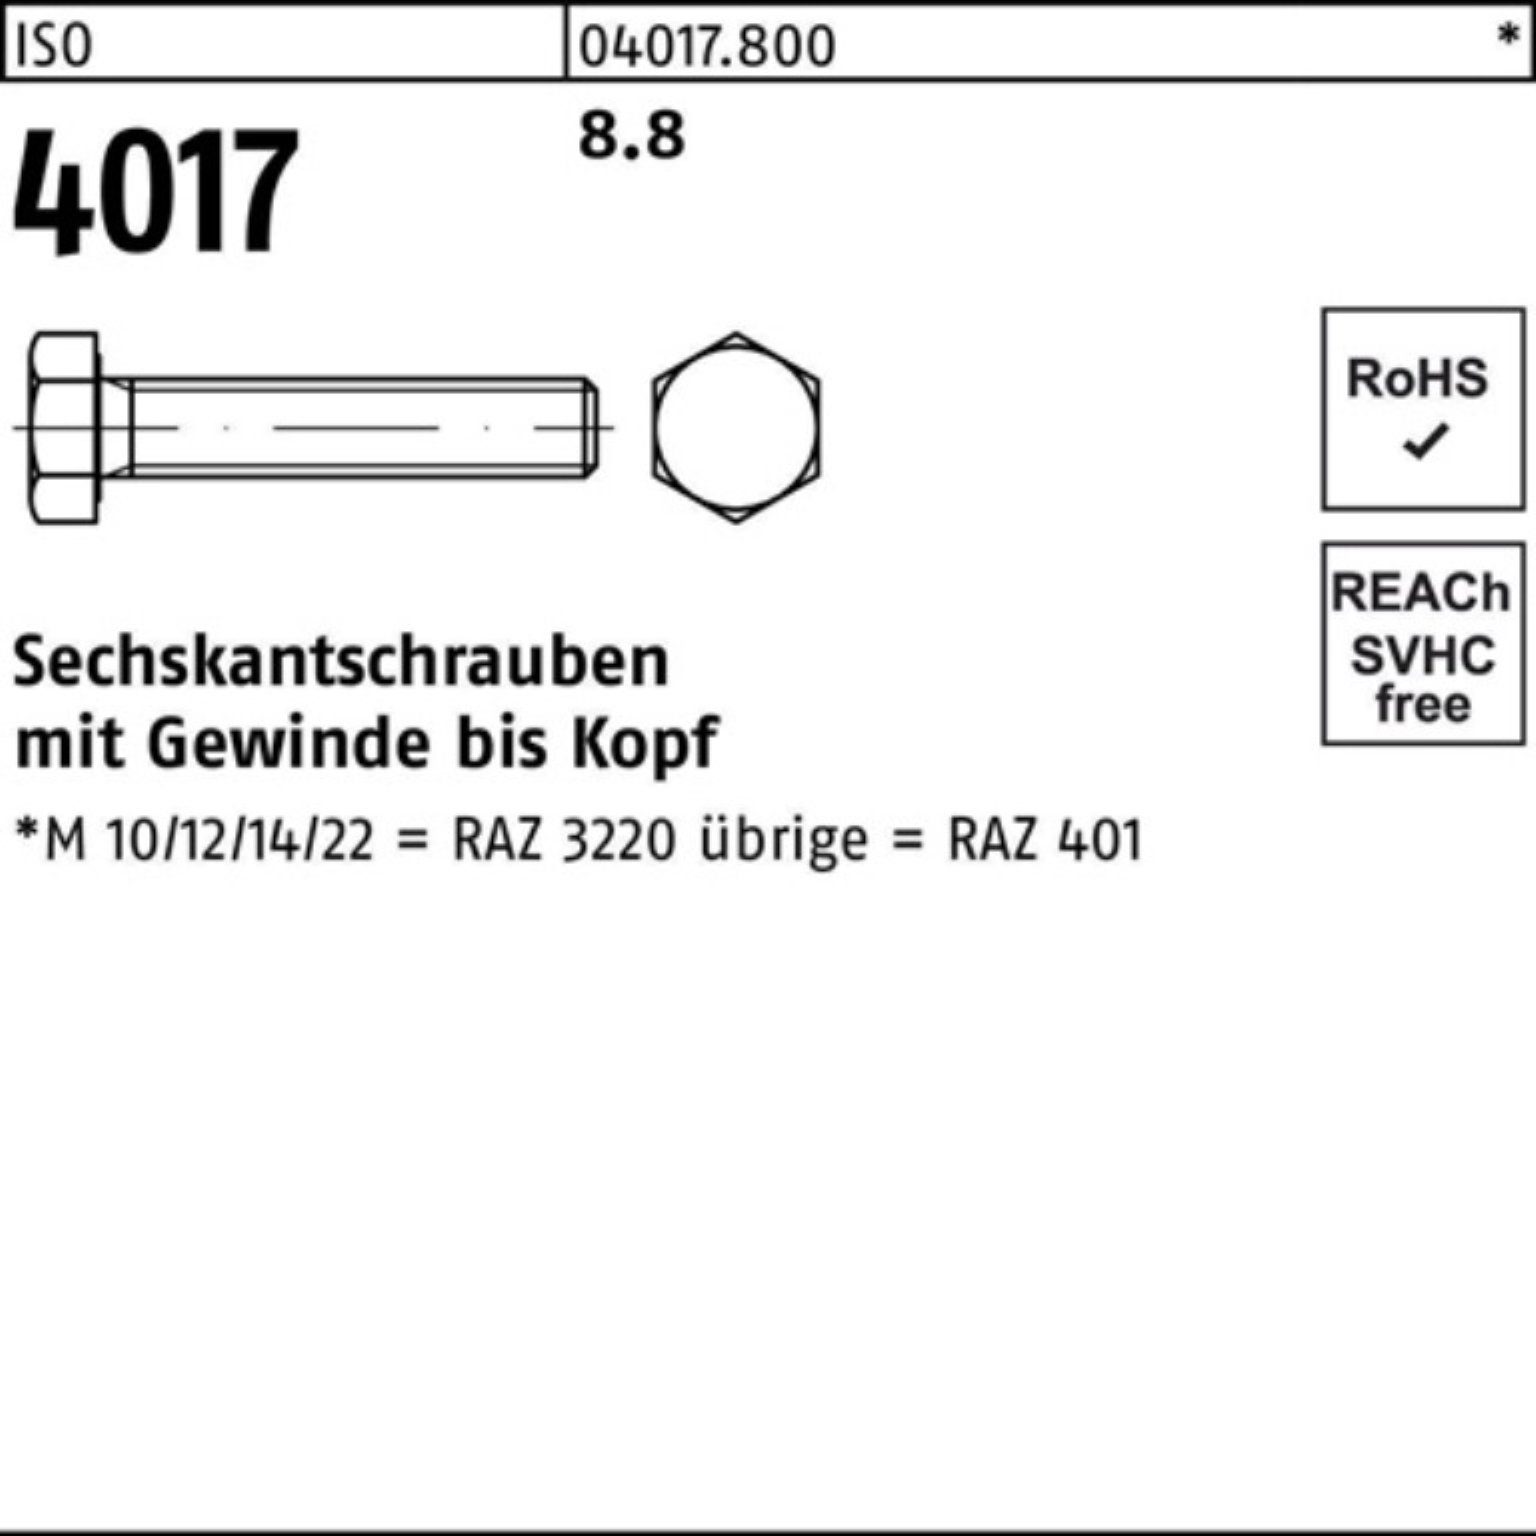 180 Sechskantschraube 40 100er ISO Bufab Sechskantschraube Stück VG 4017 8.8 25 ISO M12x Pack